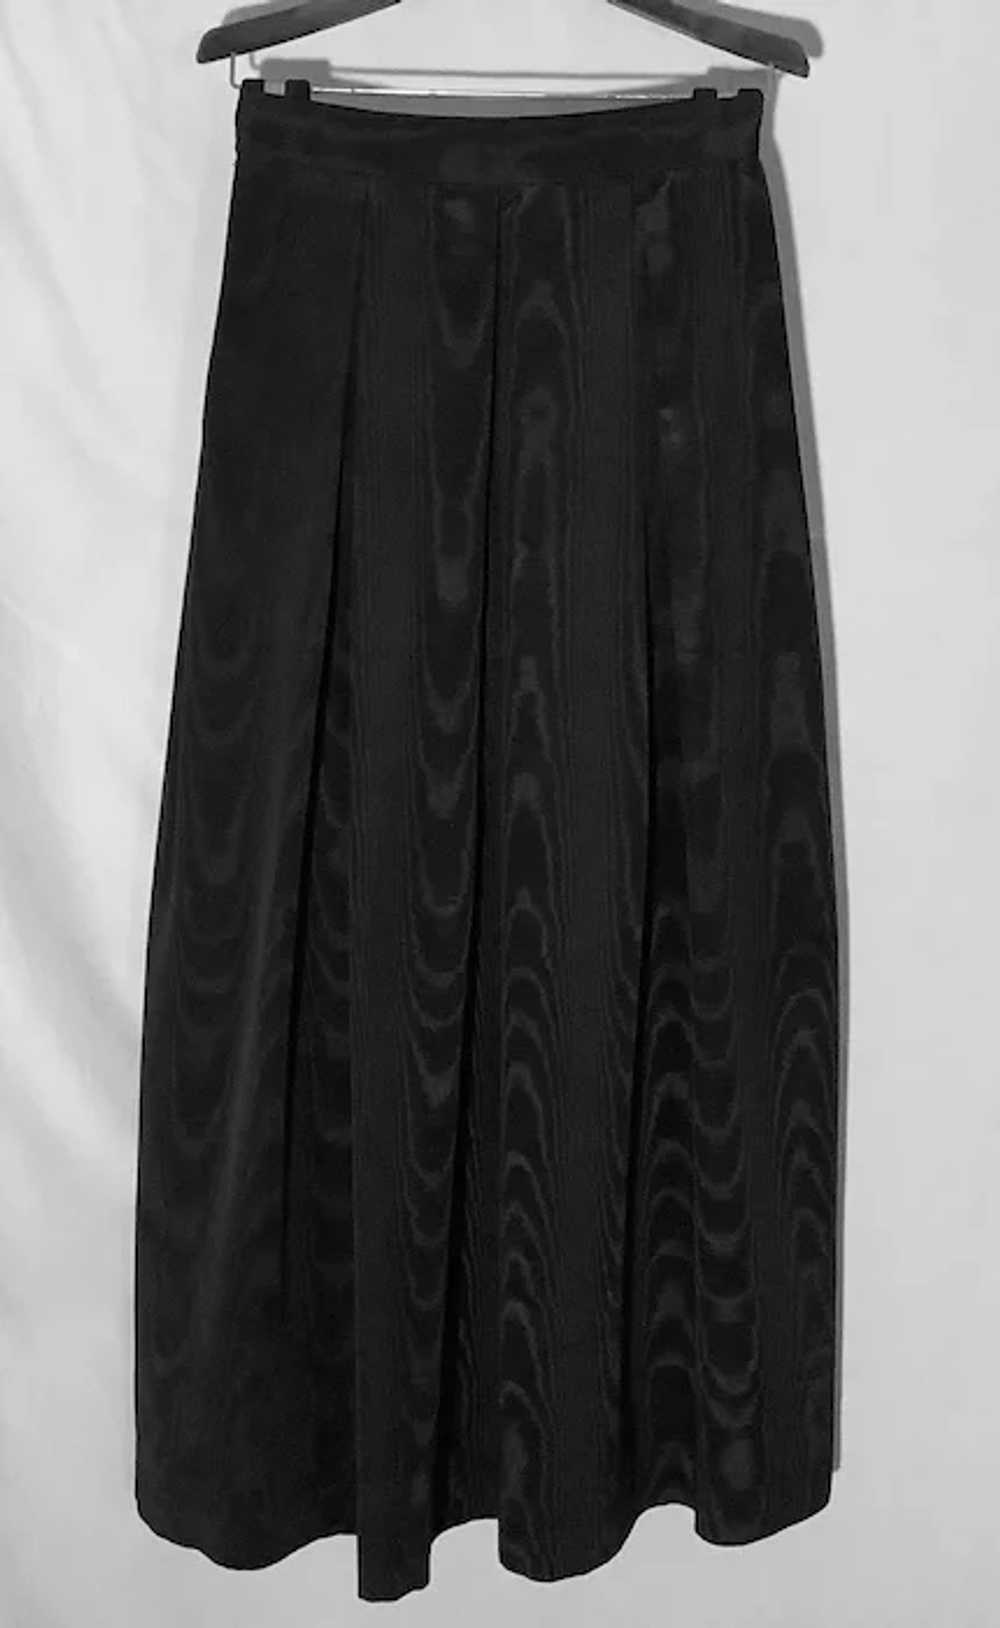 Vintage Floor Length Black Taffeta Skirt - image 2